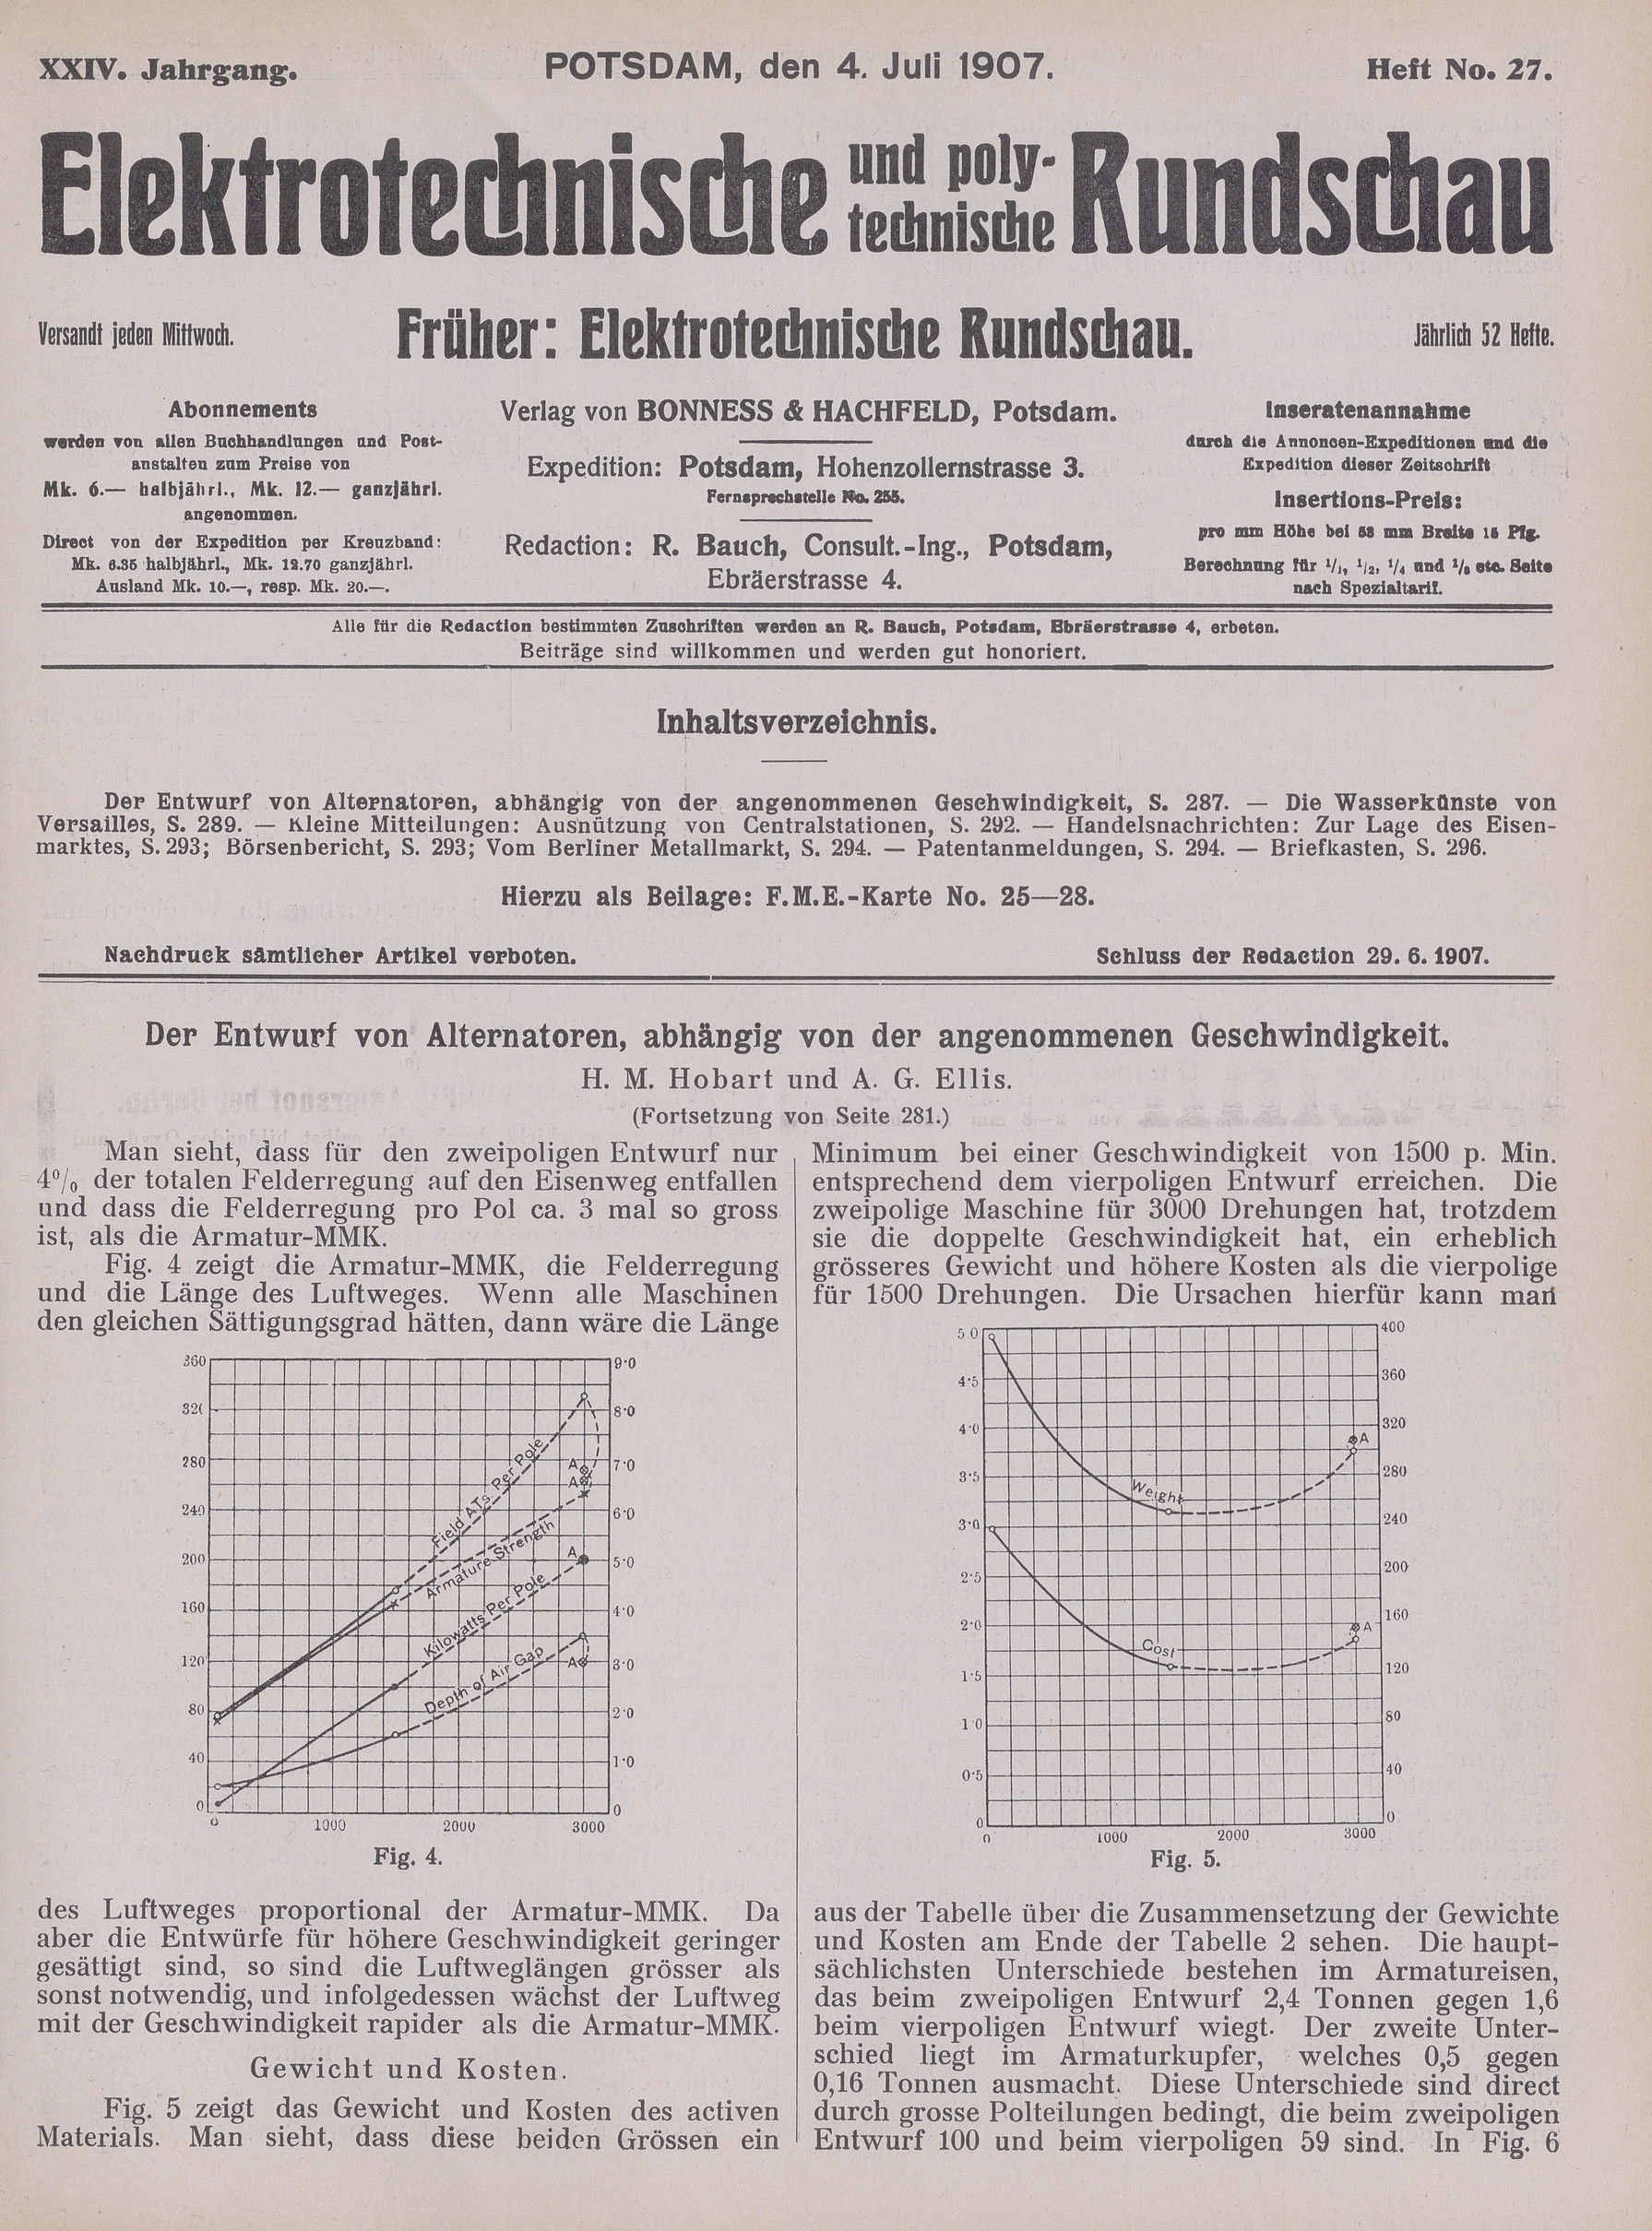 Elektrotechnische und polytechnische Rundschau, XXIV. Jahrgang, Heft No. 27